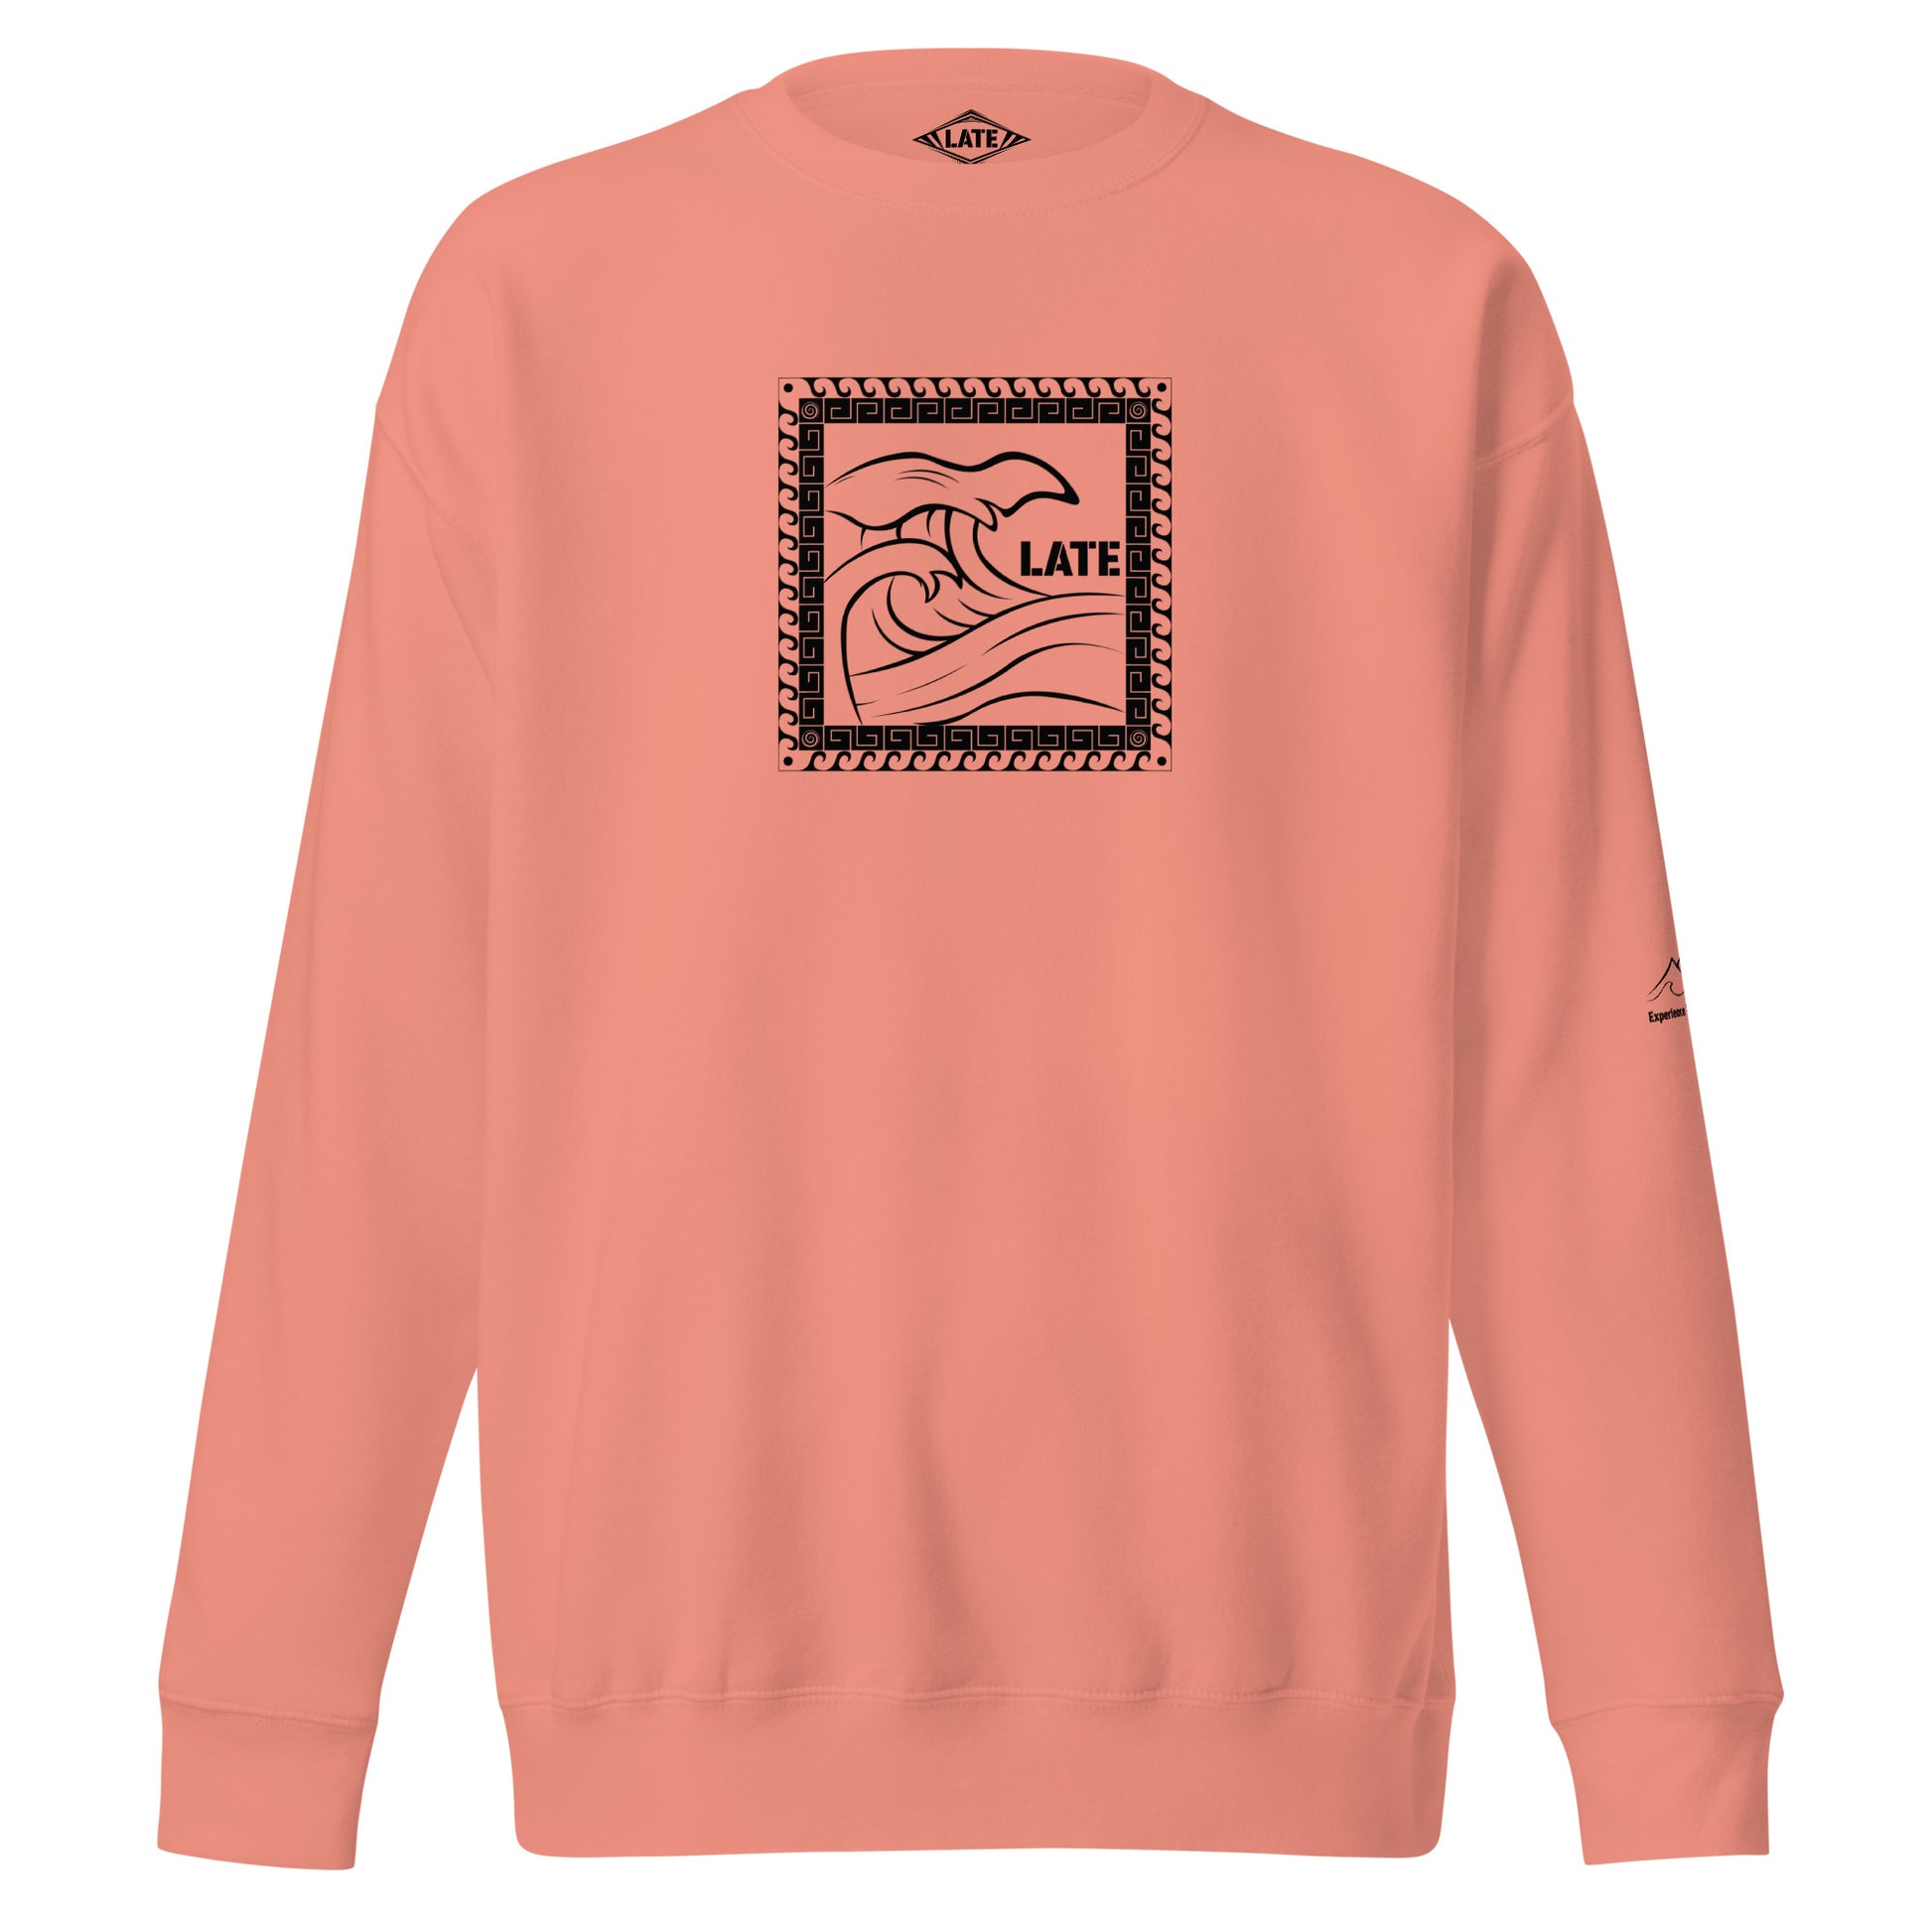 Sweatshirt surf Tricky Wave maori vague japonaise, sweat unisex couleur rose